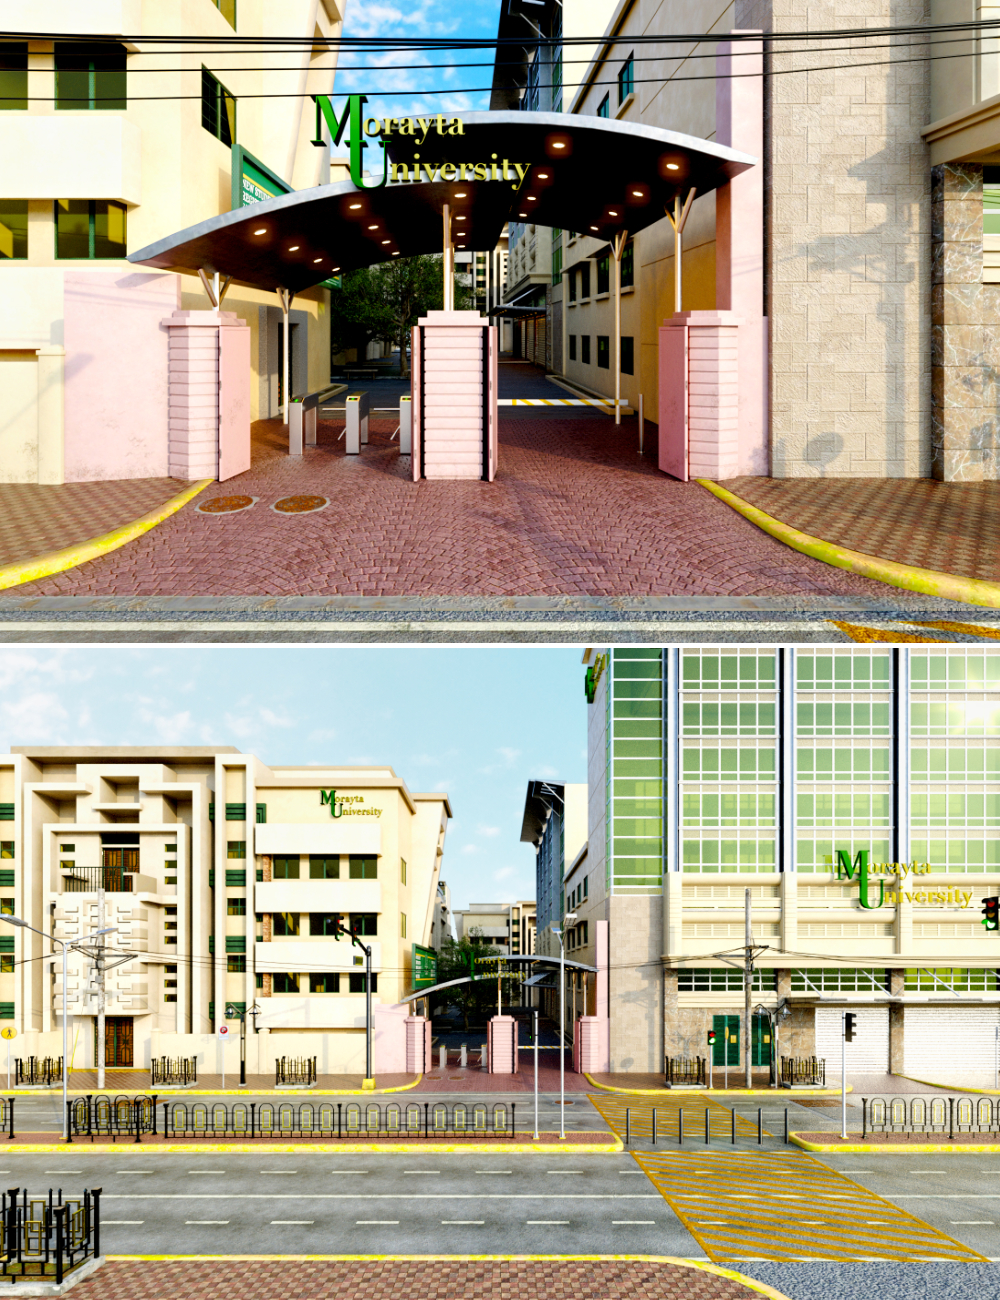 Morayta University Entrance by: Tesla3dCorp, 3D Models by Daz 3D